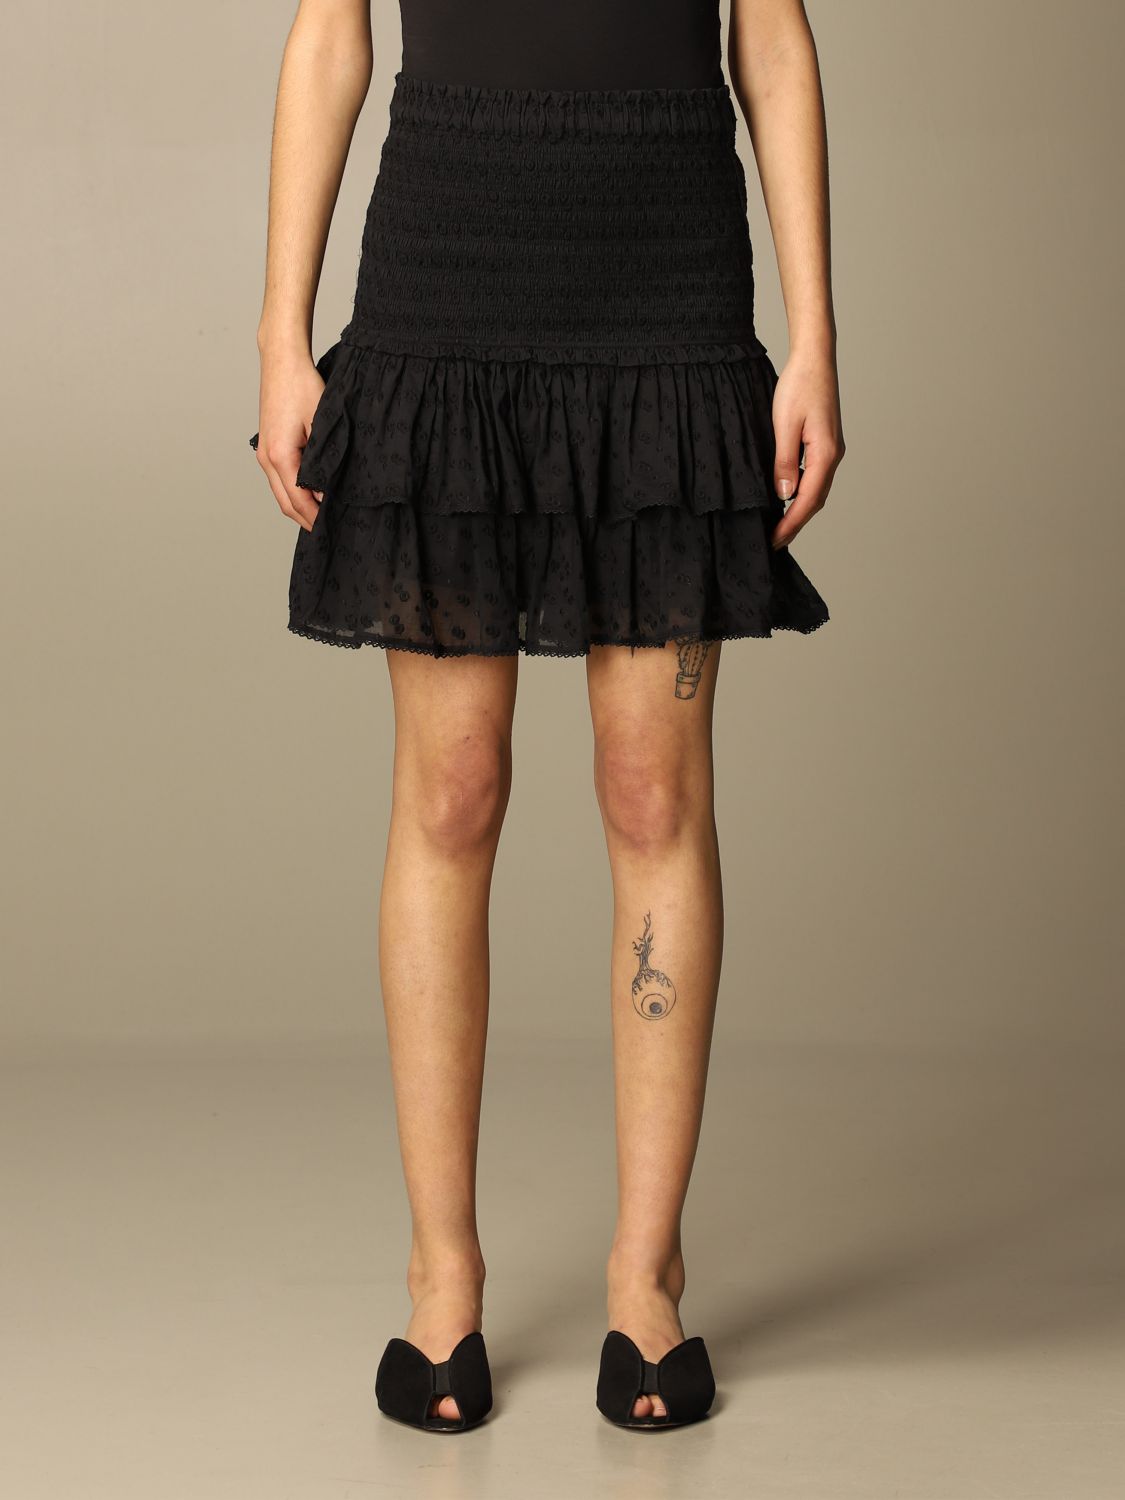 ISABEL MARANT ETOILE: Isabel Marant skirt with Sangallo - Black | Isabel Marant Etoile skirt online on GIGLIO.COM